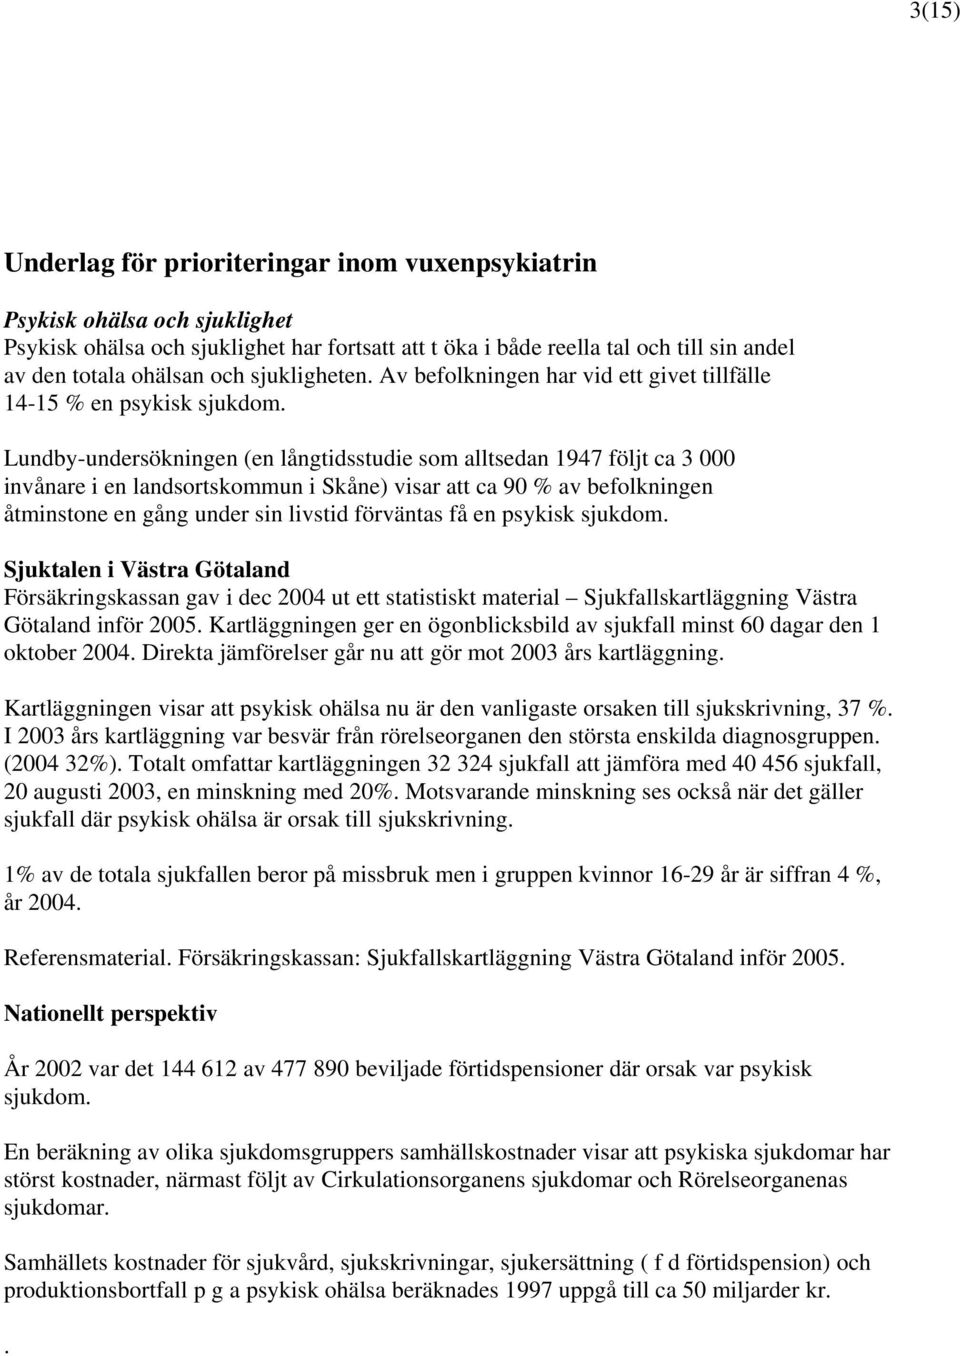 Lundby-undersökningen (en långtidsstudie som alltsedan 1947 följt ca 3 000 invånare i en landsortskommun i Skåne) visar att ca 90 % av befolkningen åtminstone en gång under sin livstid förväntas få